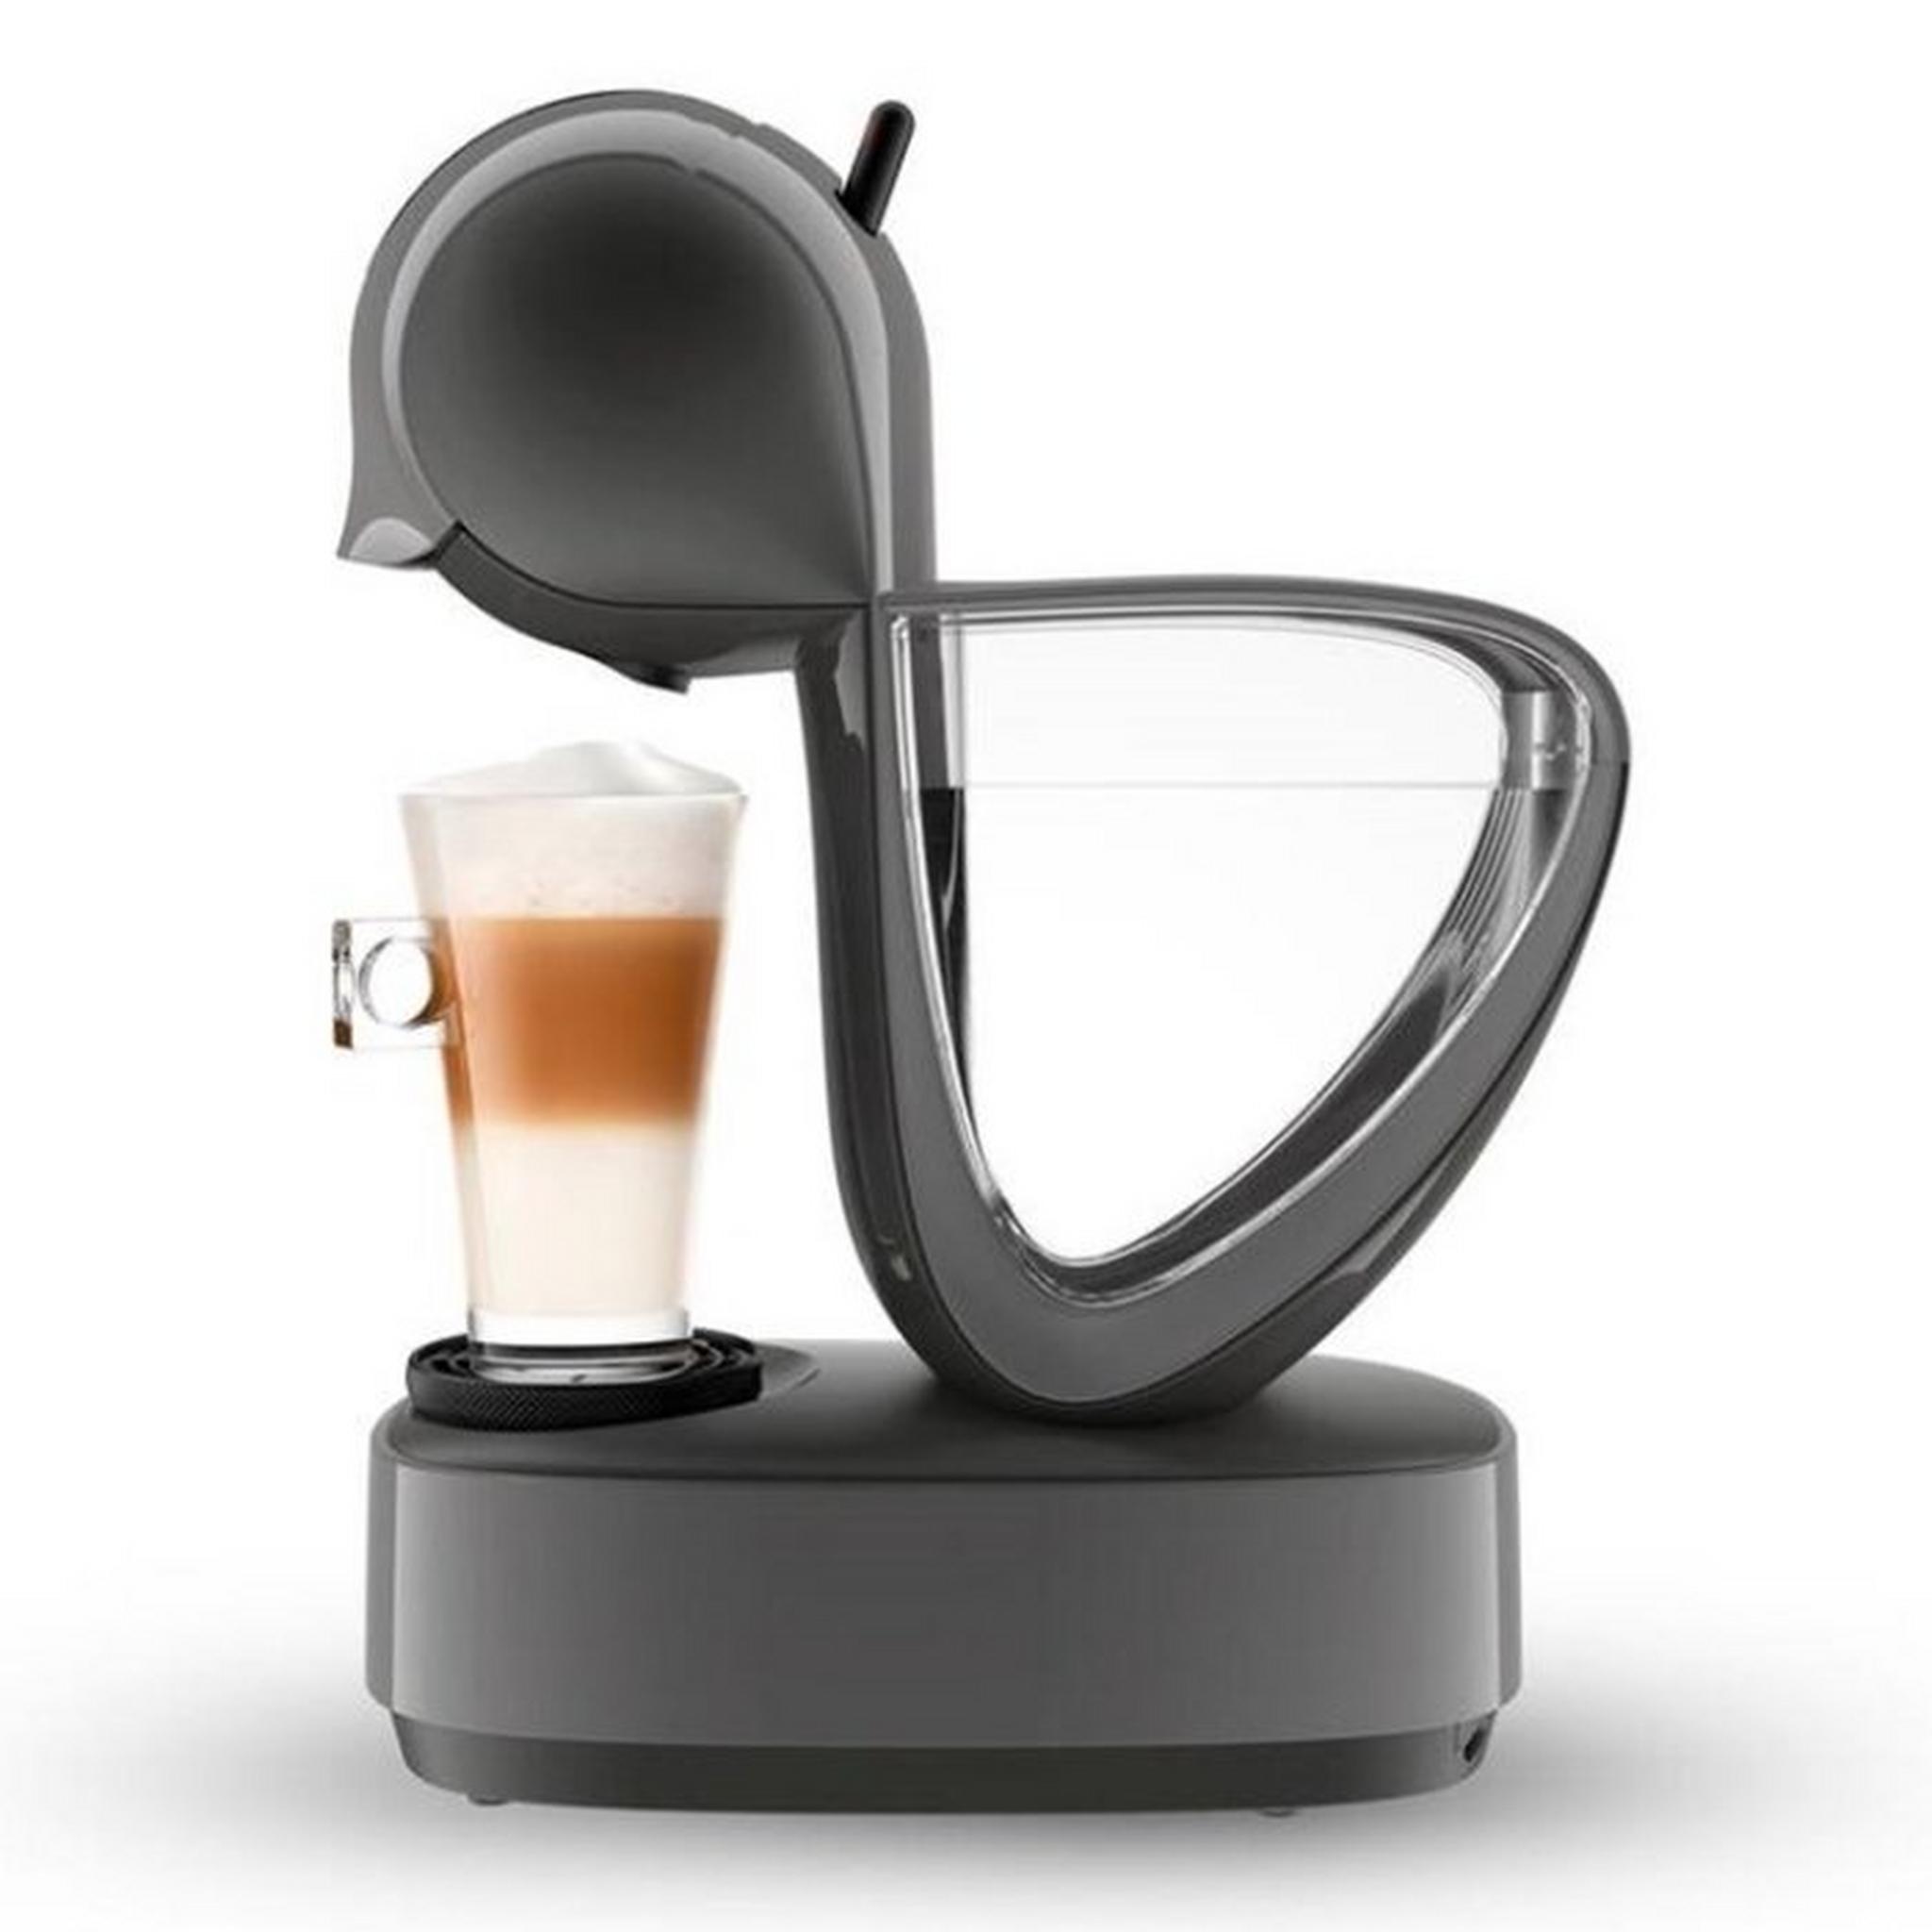 ماكينة تحضير القهوة ديلونجي دولتشي جوستو ، قدرة 1500 واط، سعة 1.2 لتر، EDG268.GY - فضي